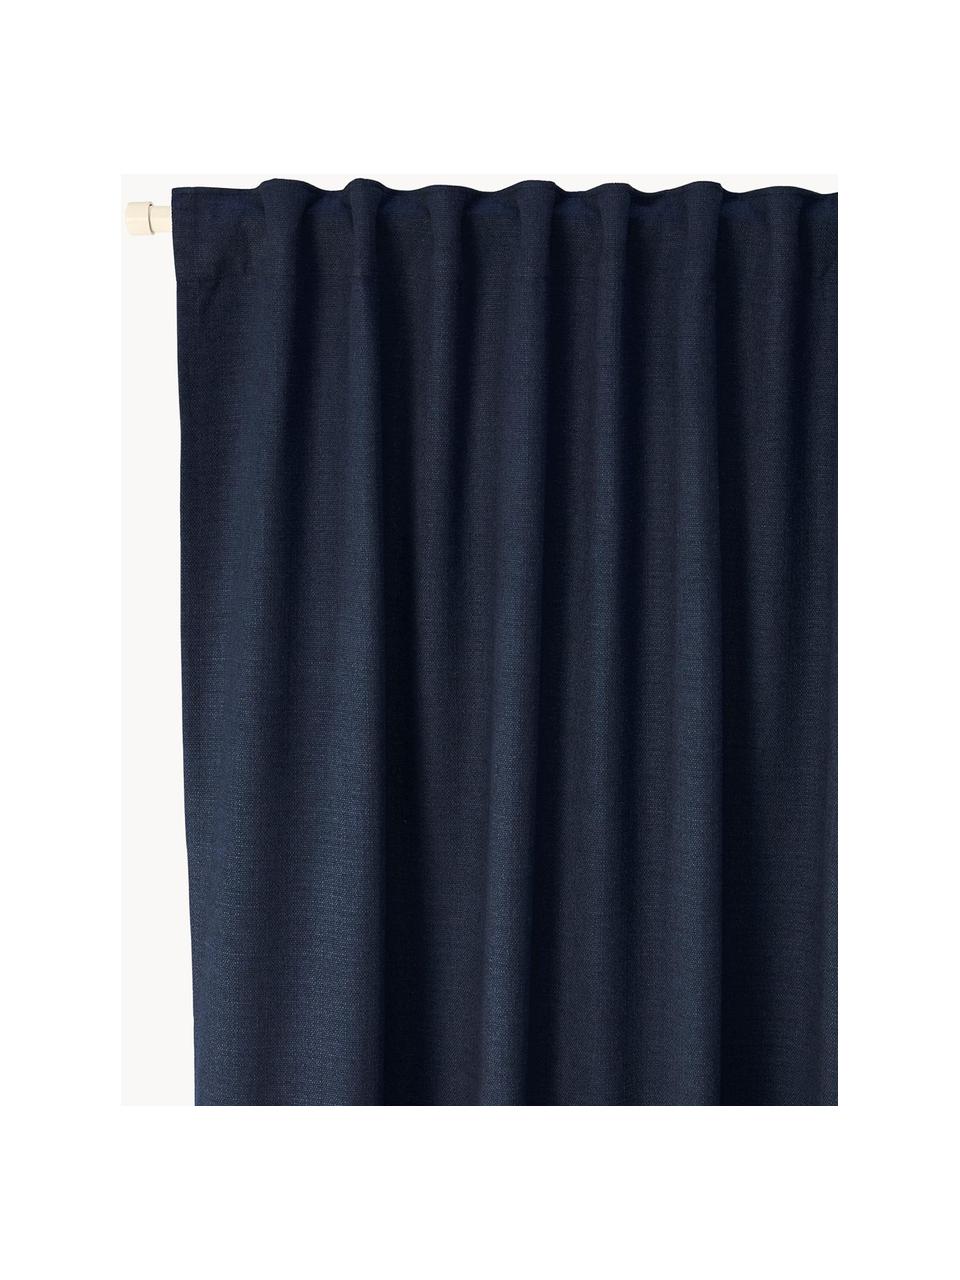 Rideaux opaques avec ruflette multiple Jensen, 2 pièces, 95 % polyester, 5 % nylon, Bleu foncé, larg. 130 x long. 260 cm